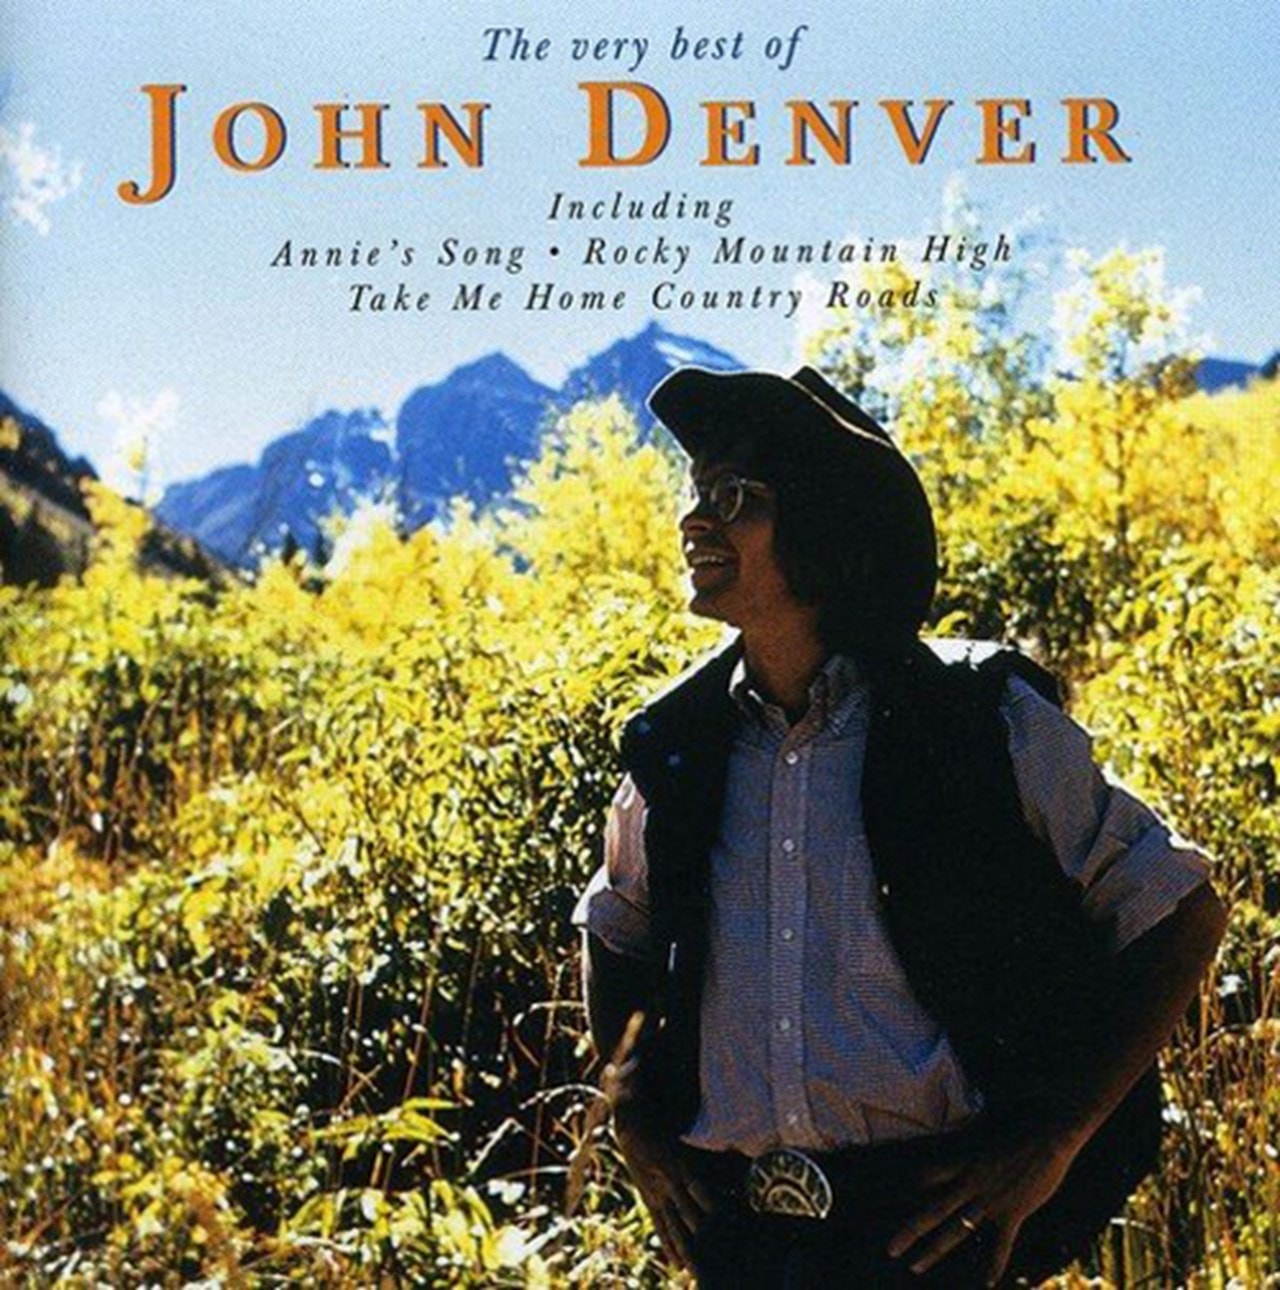 The Very Best Of John Denver | CD Album | Free shipping over Â£20 | HMV